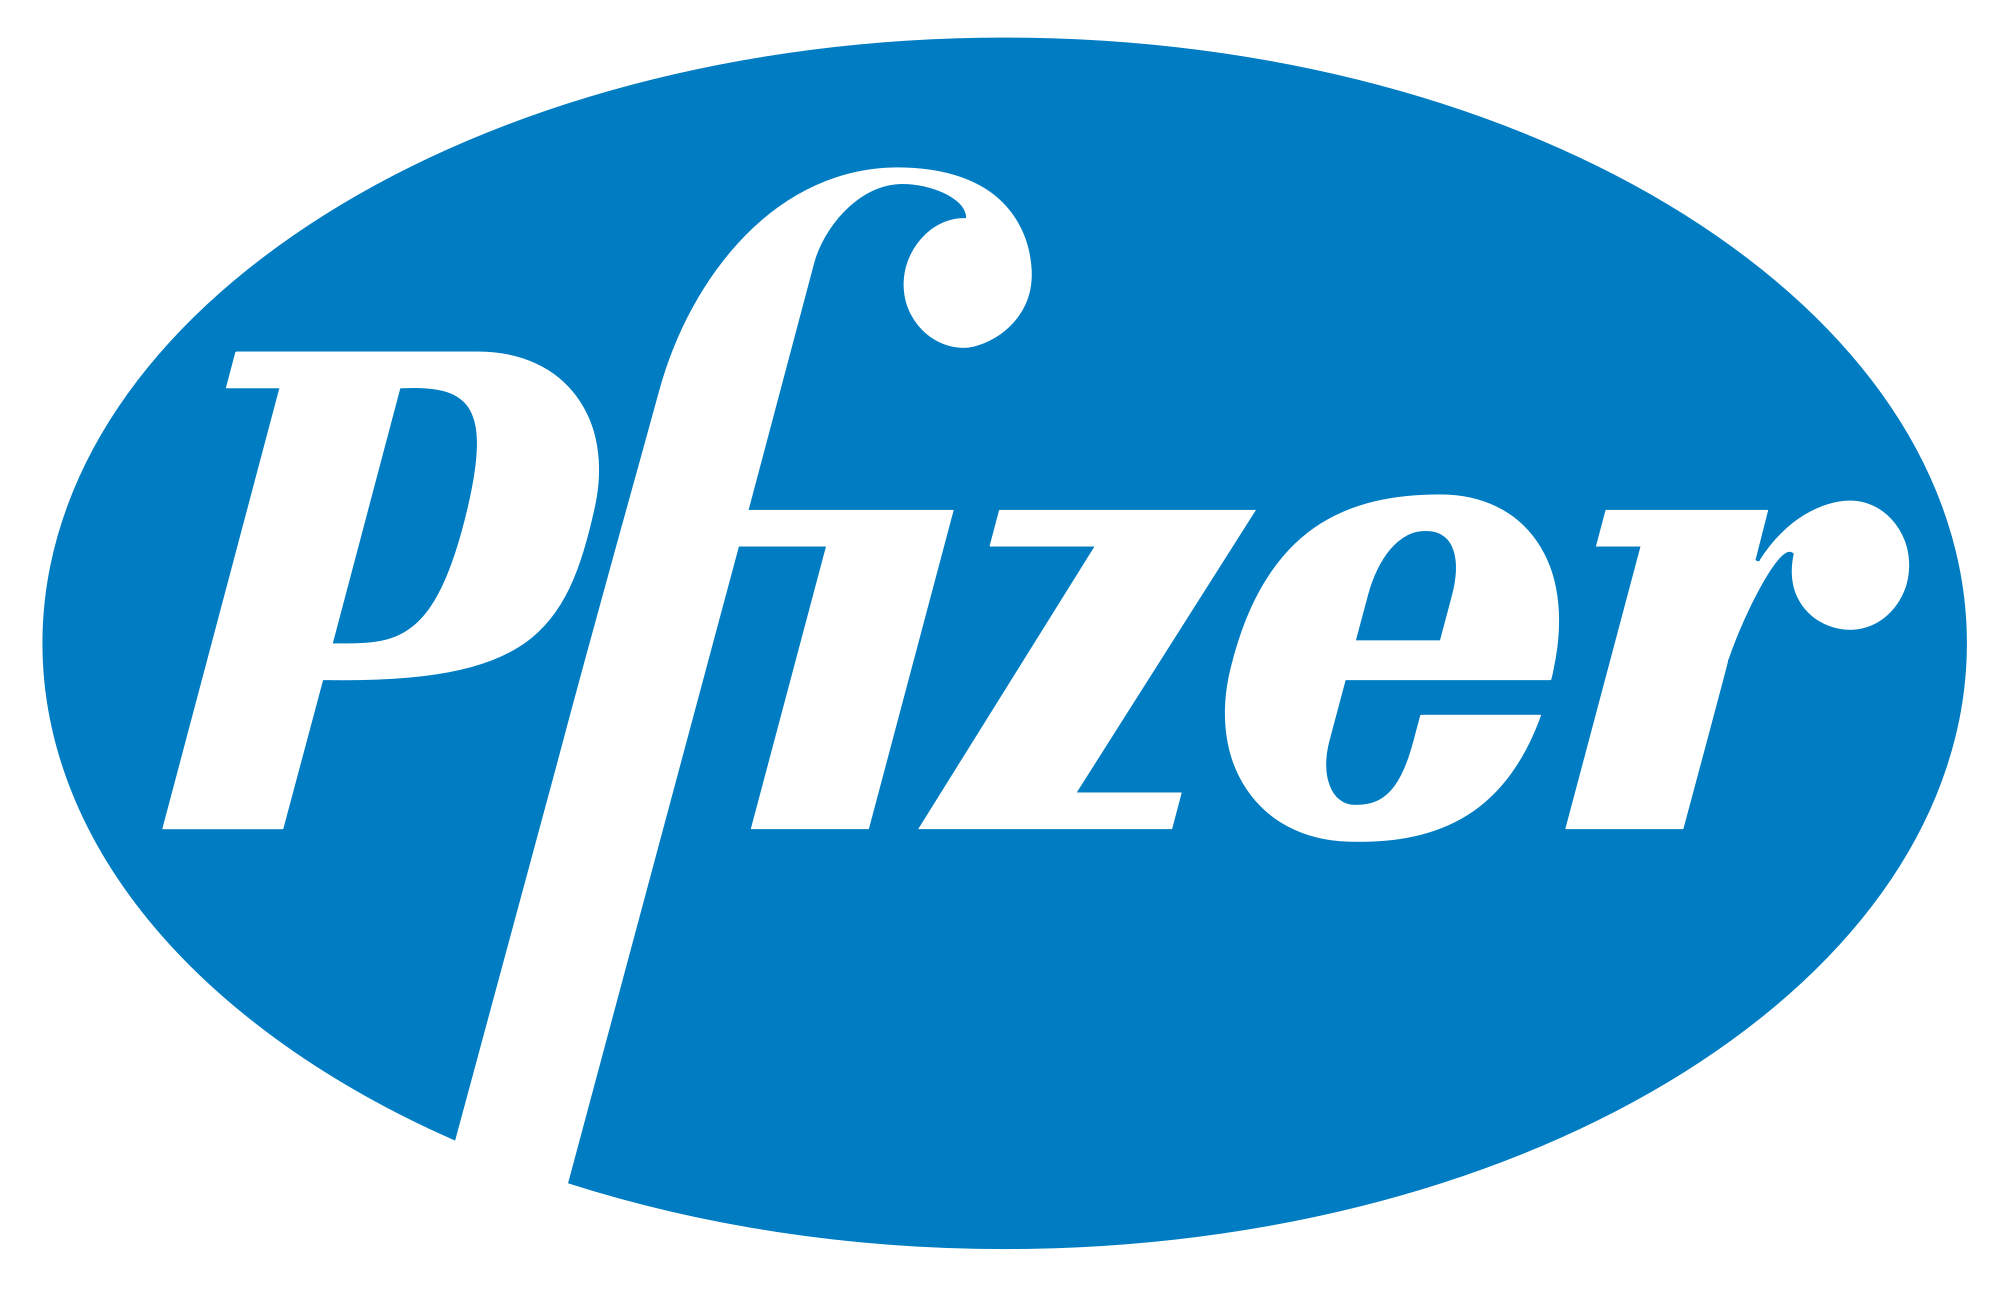 logo-pfizer.png